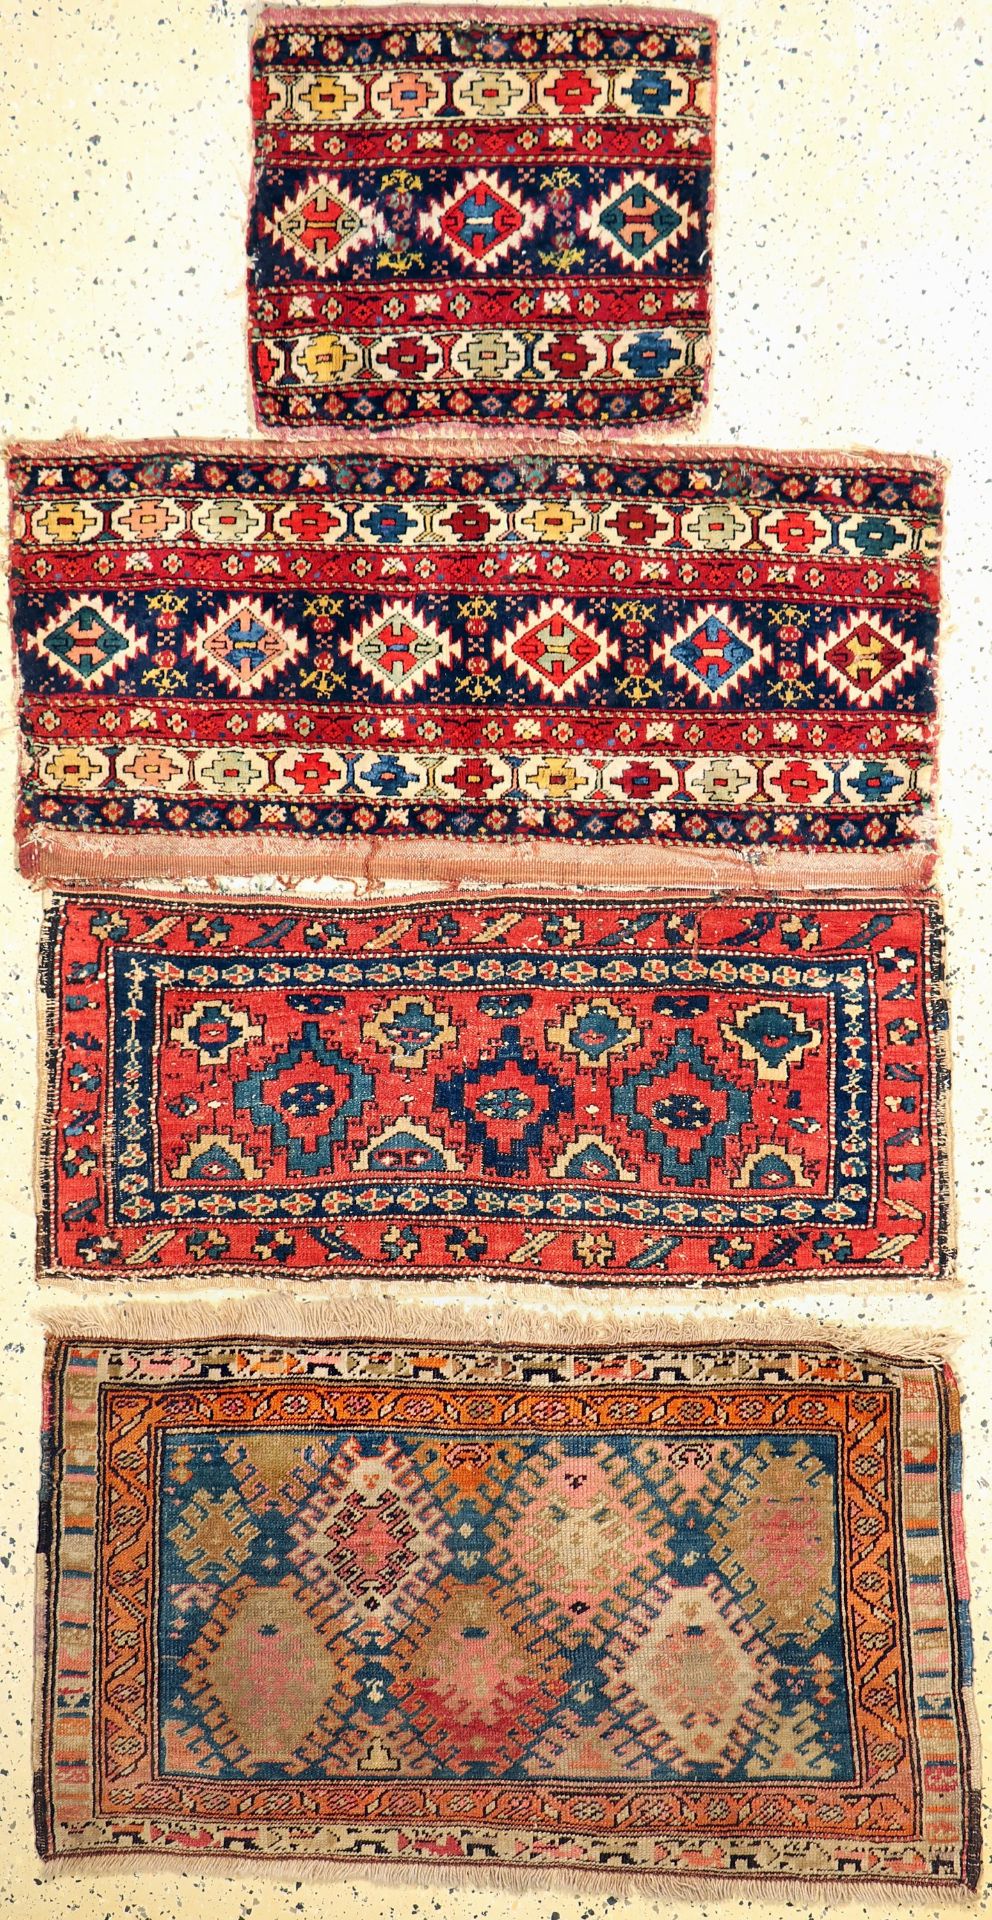 4 Shahsawan Mafraschteile, Persien, um 1900, Wolle auf